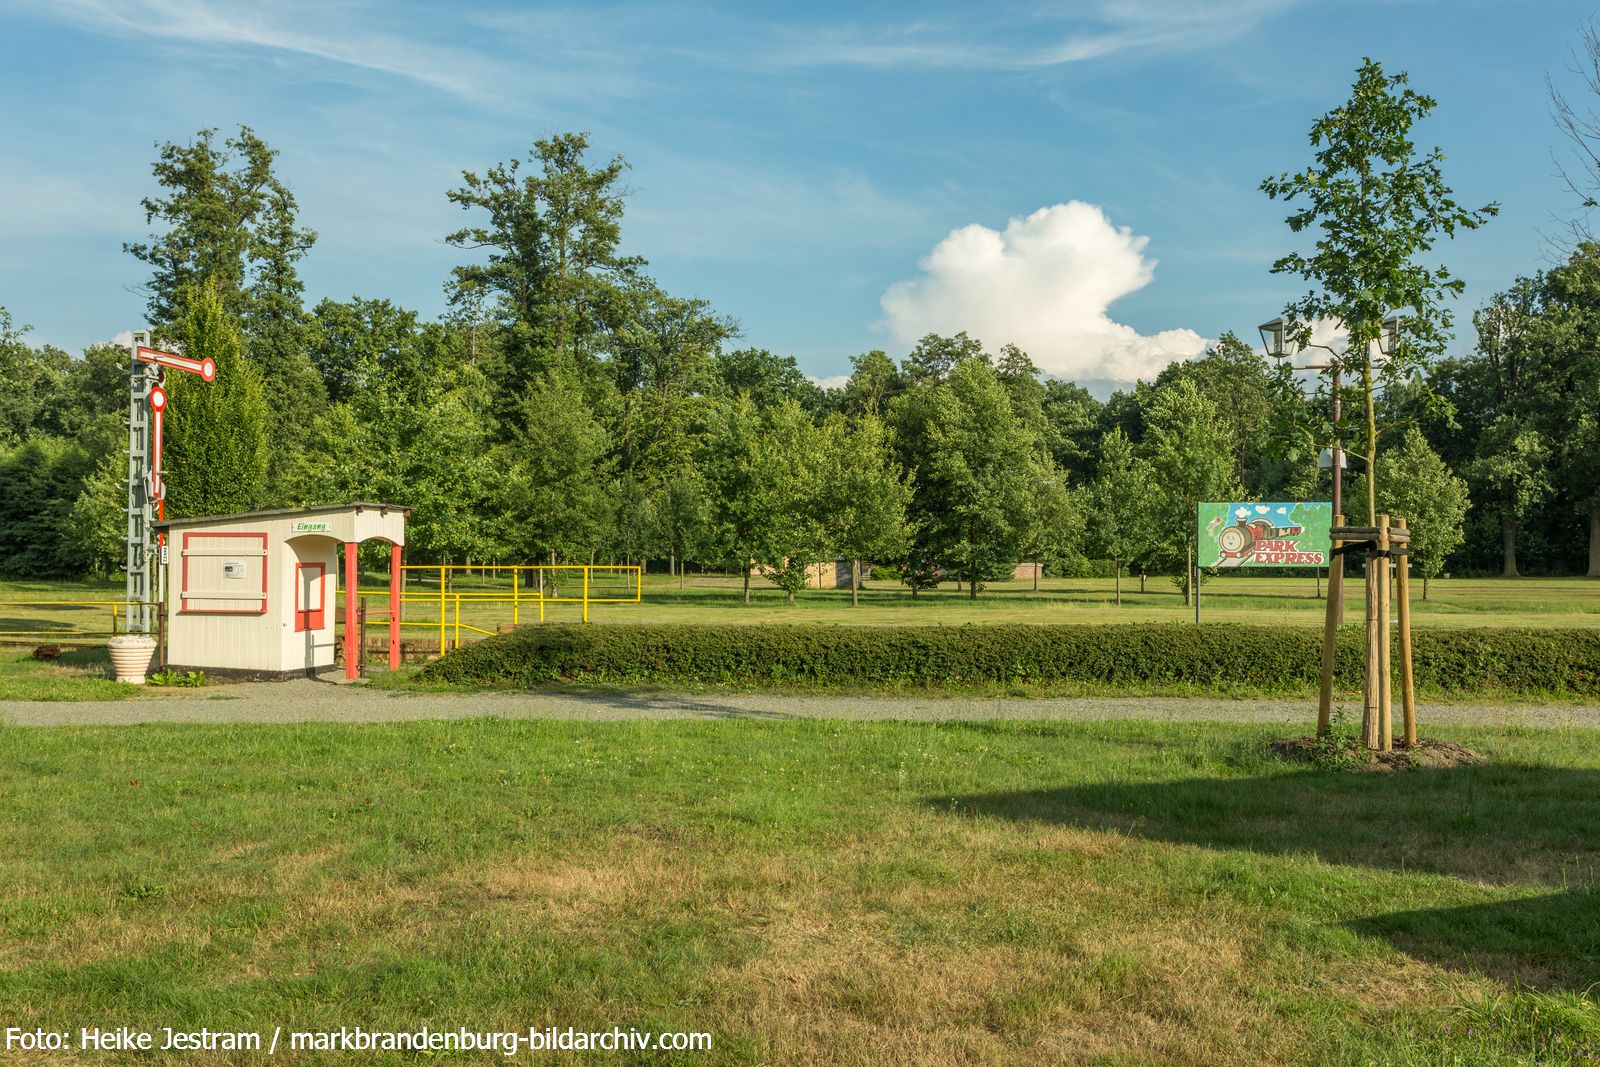 Lauchhammer-Schlosspark-Station und Signalanlage der Parkeisenbahn